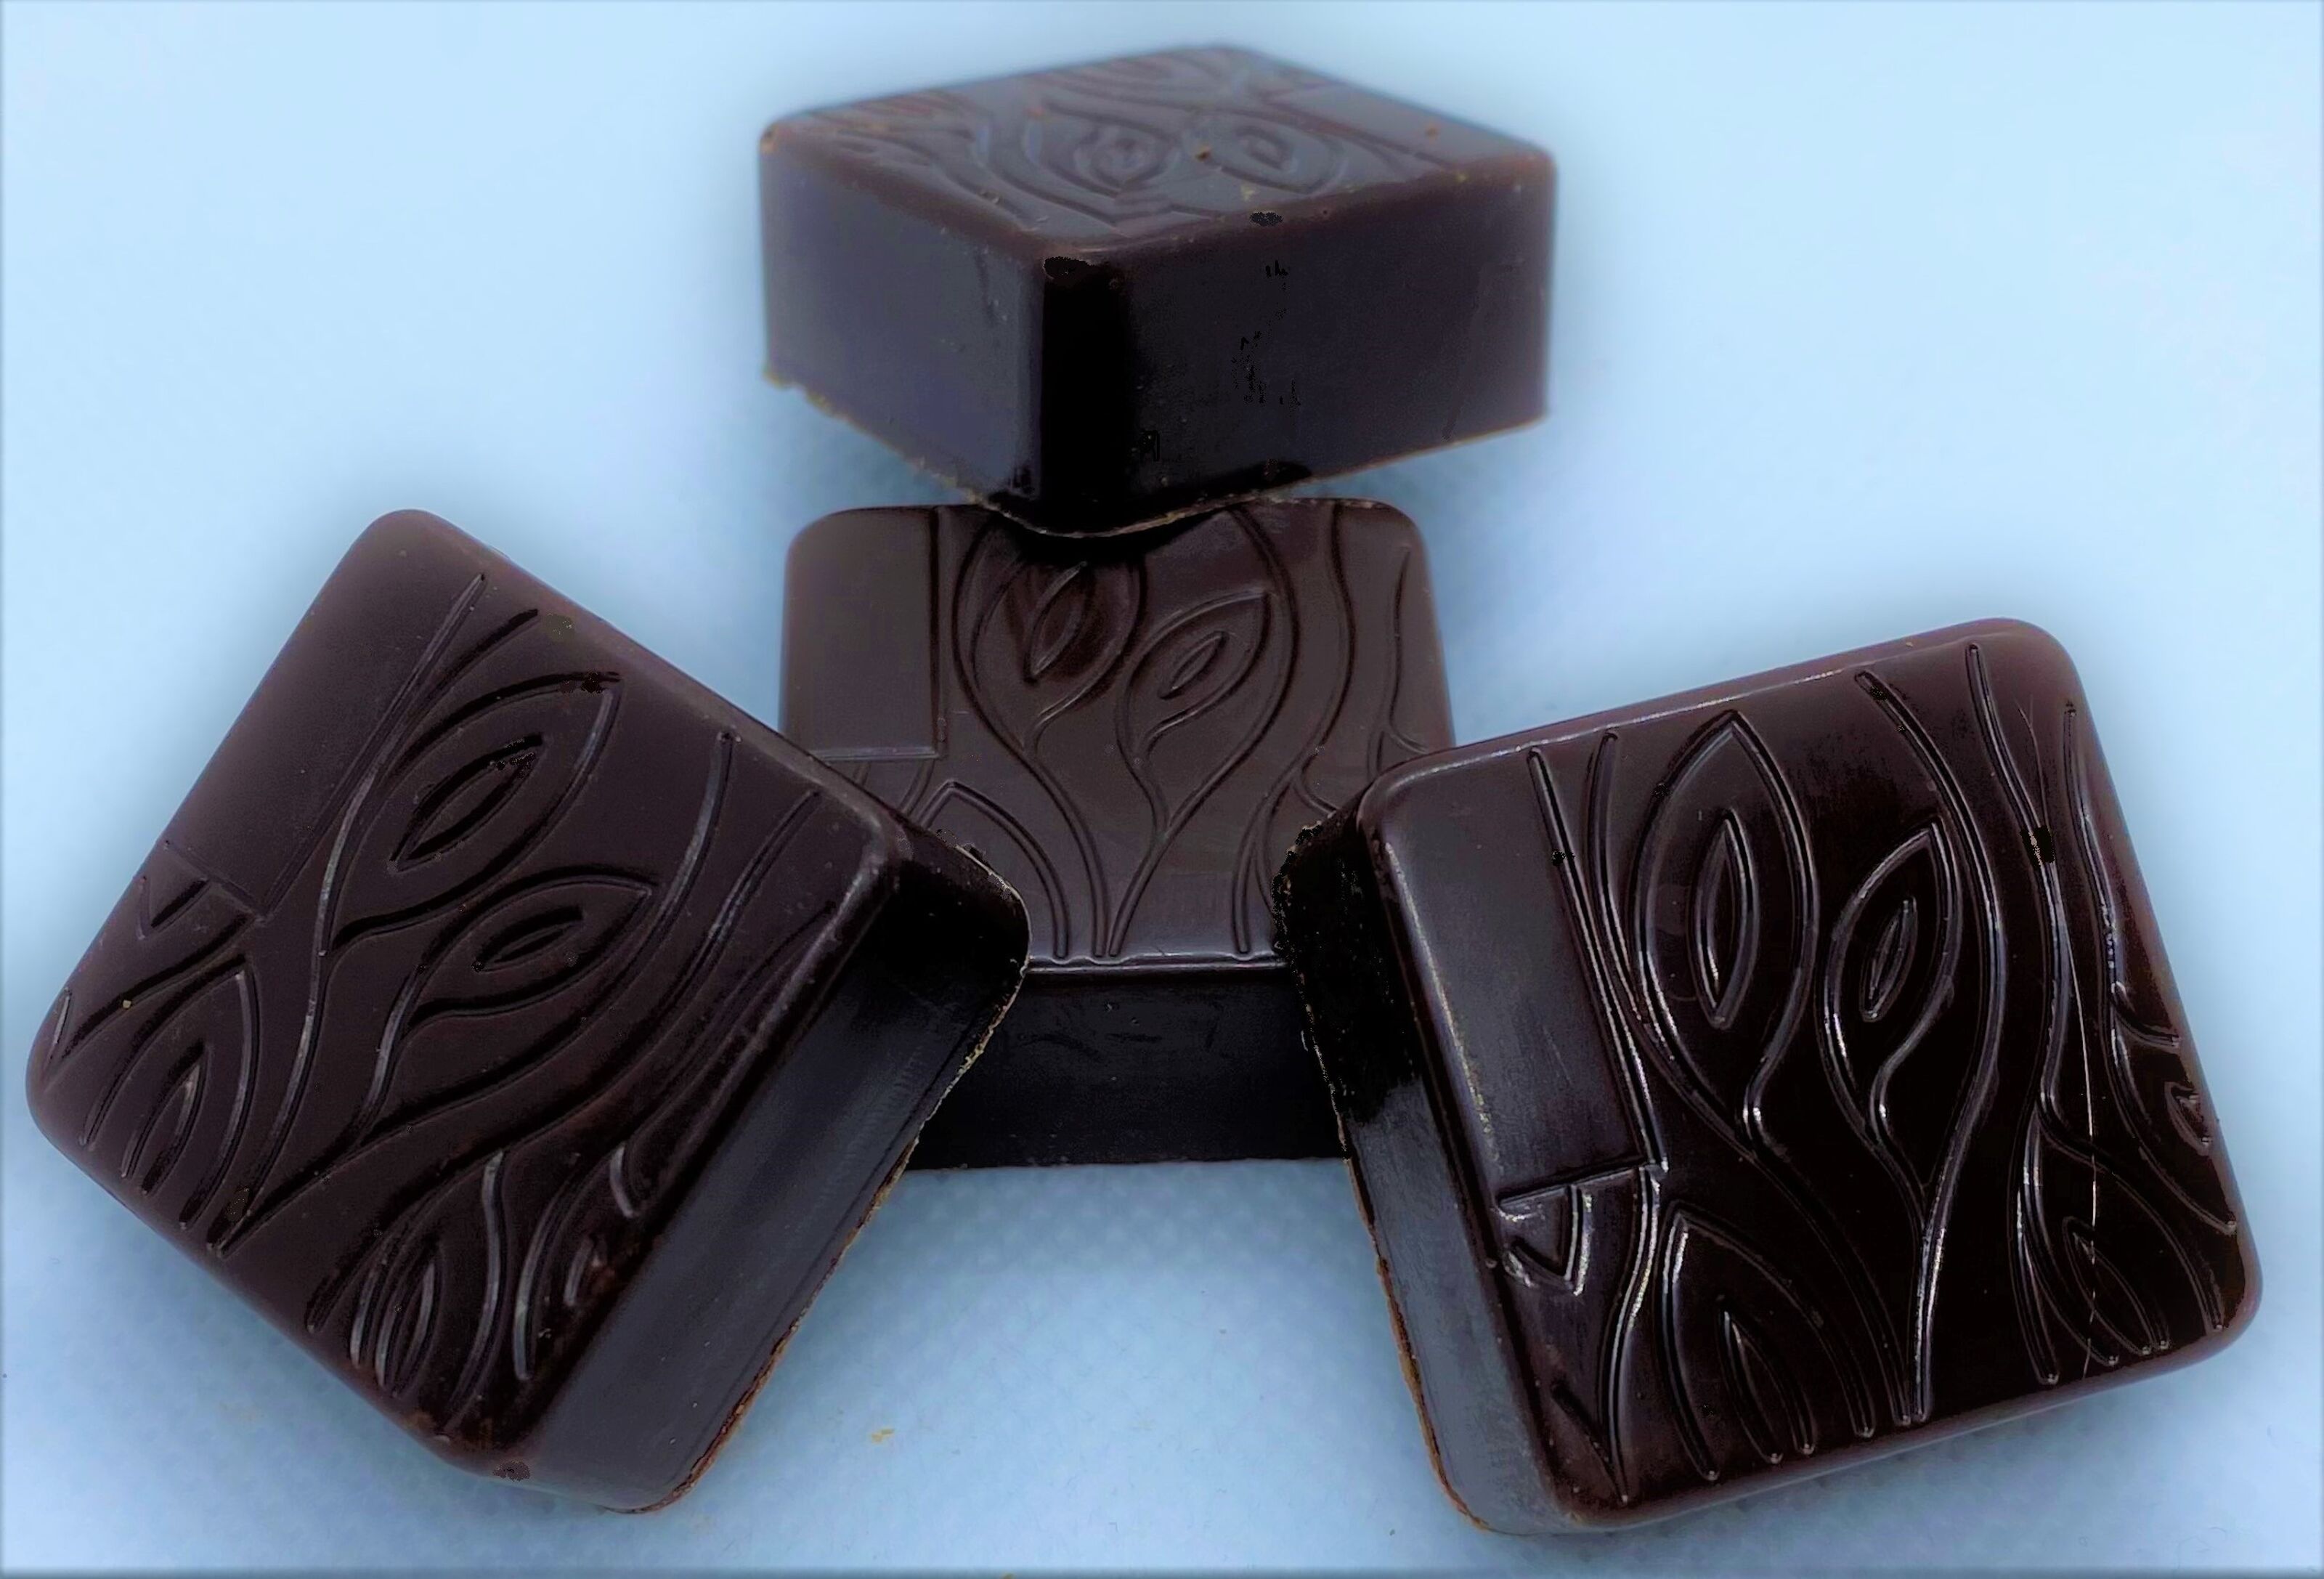 Tablette chocolat noir praliné pistache